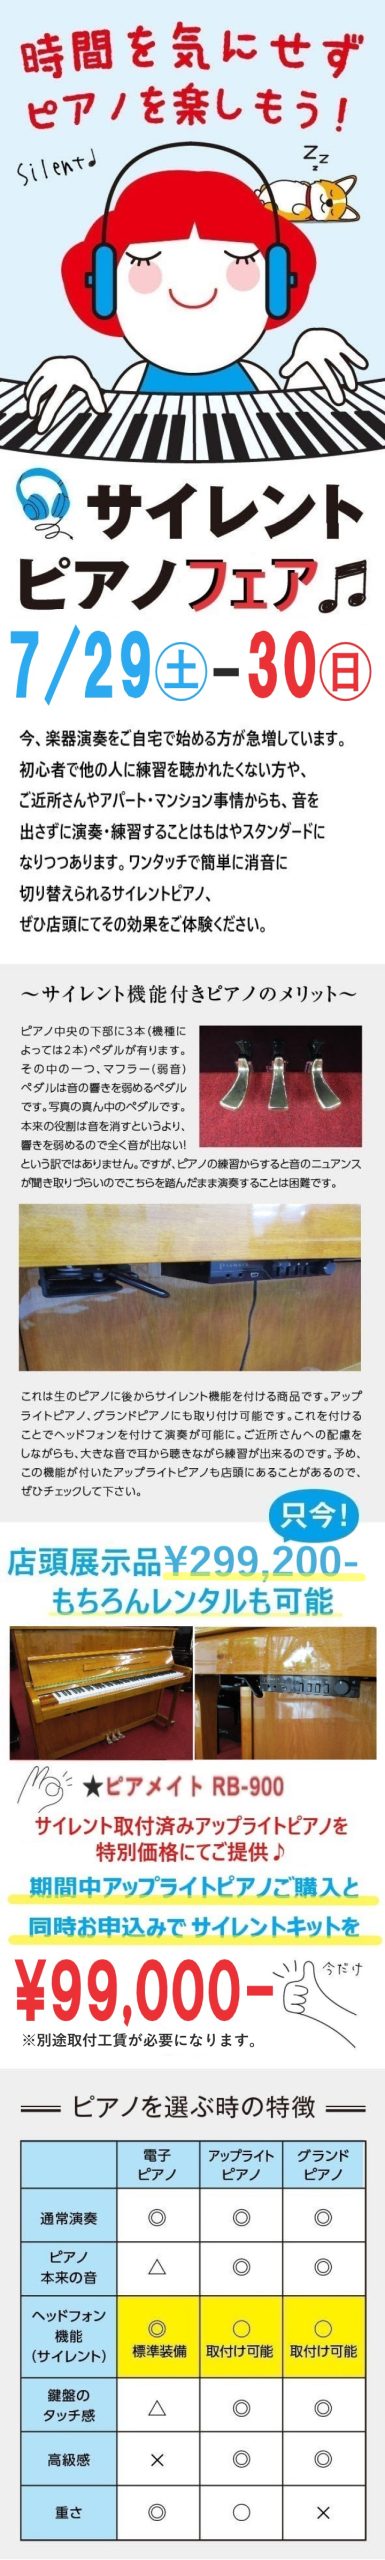 【キャンペーン】7/29㊏30㊐🎧サイレント(消音)ピアノフェア